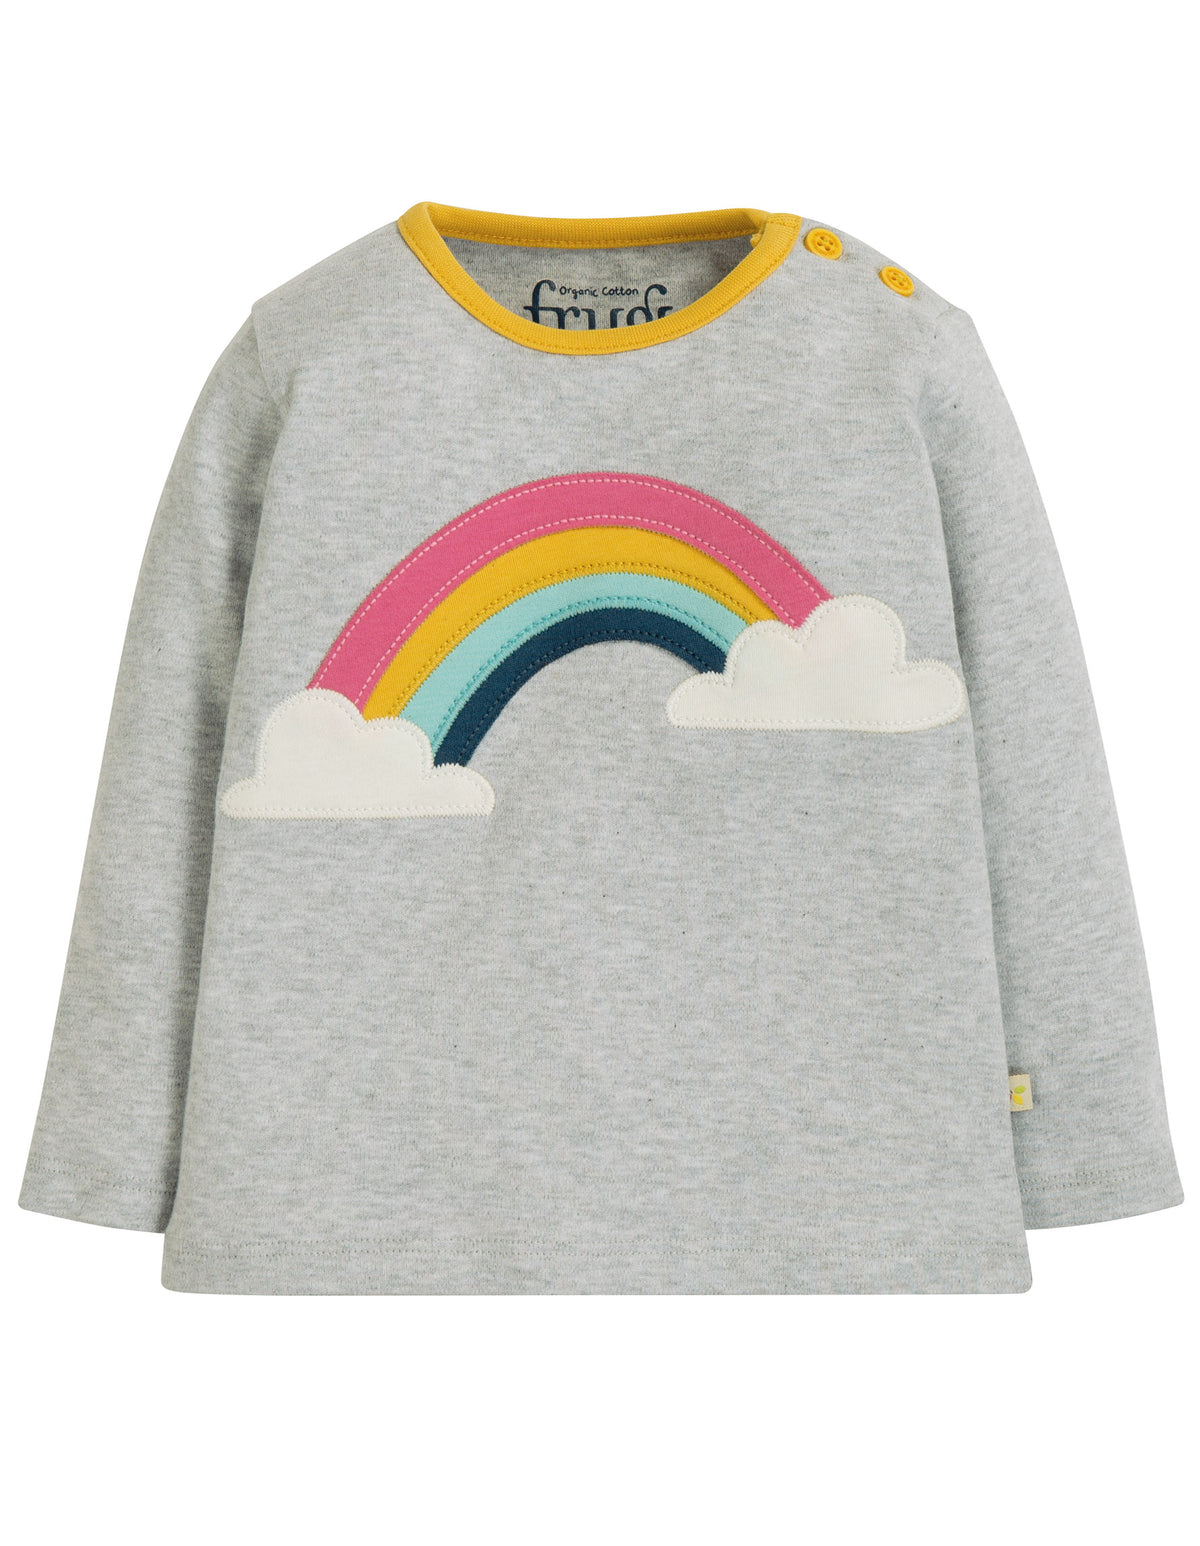 Graues Shirt mit Regenbogen appliziert von der Marke Frugi